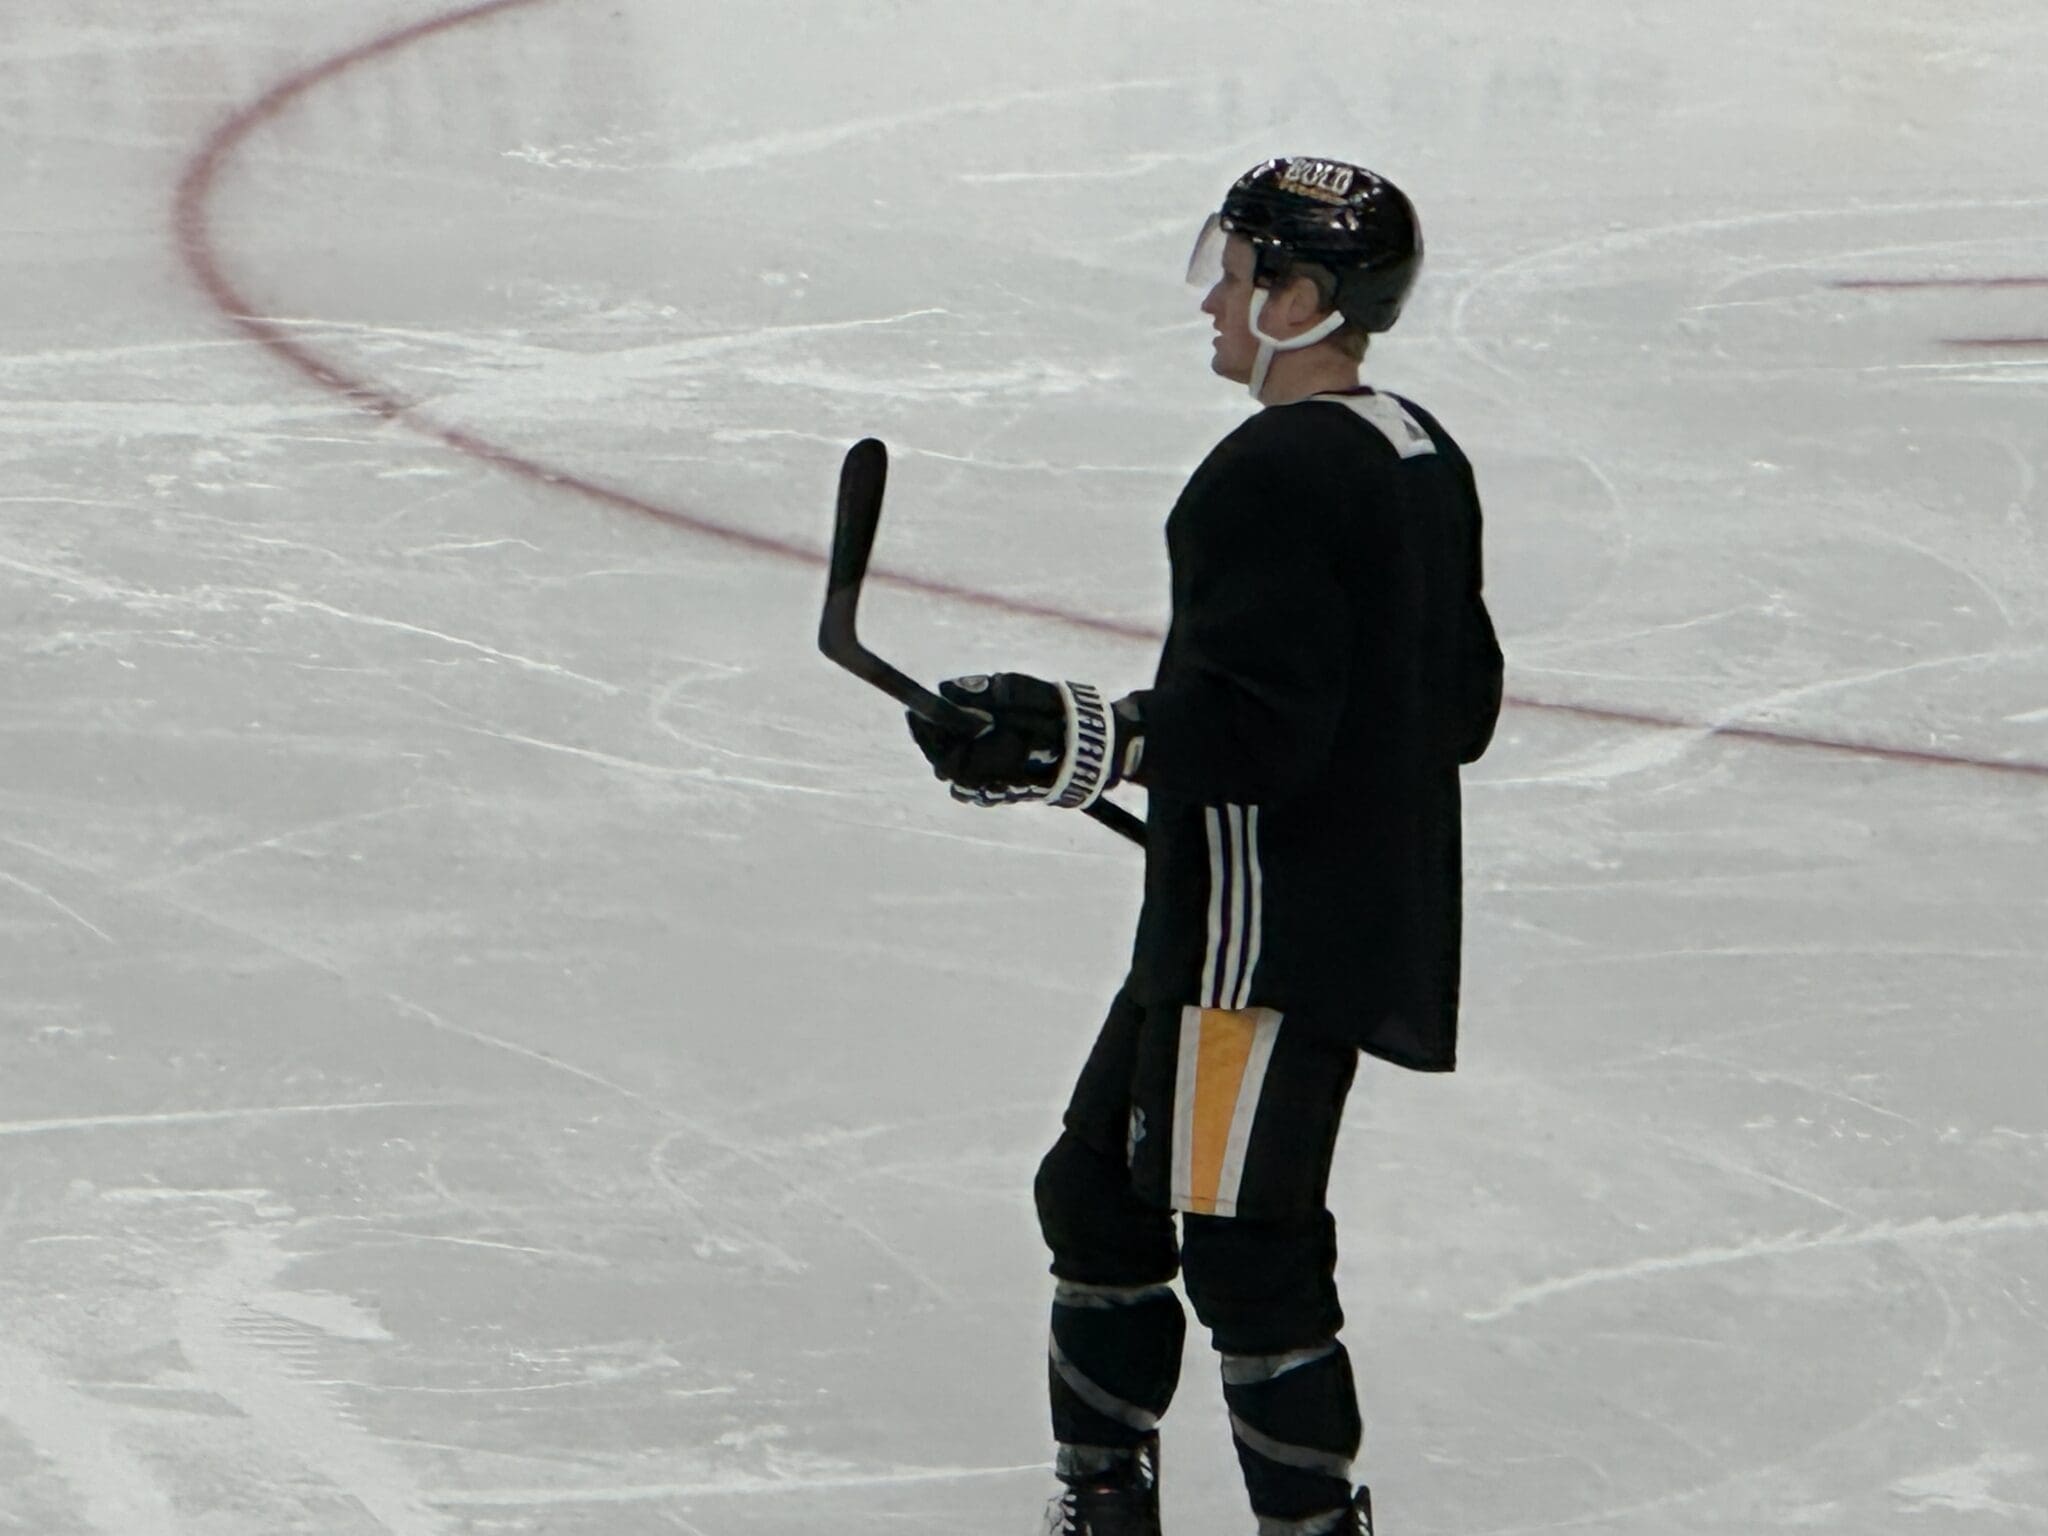 Pittsburgh Penguins, Jake Guentzel